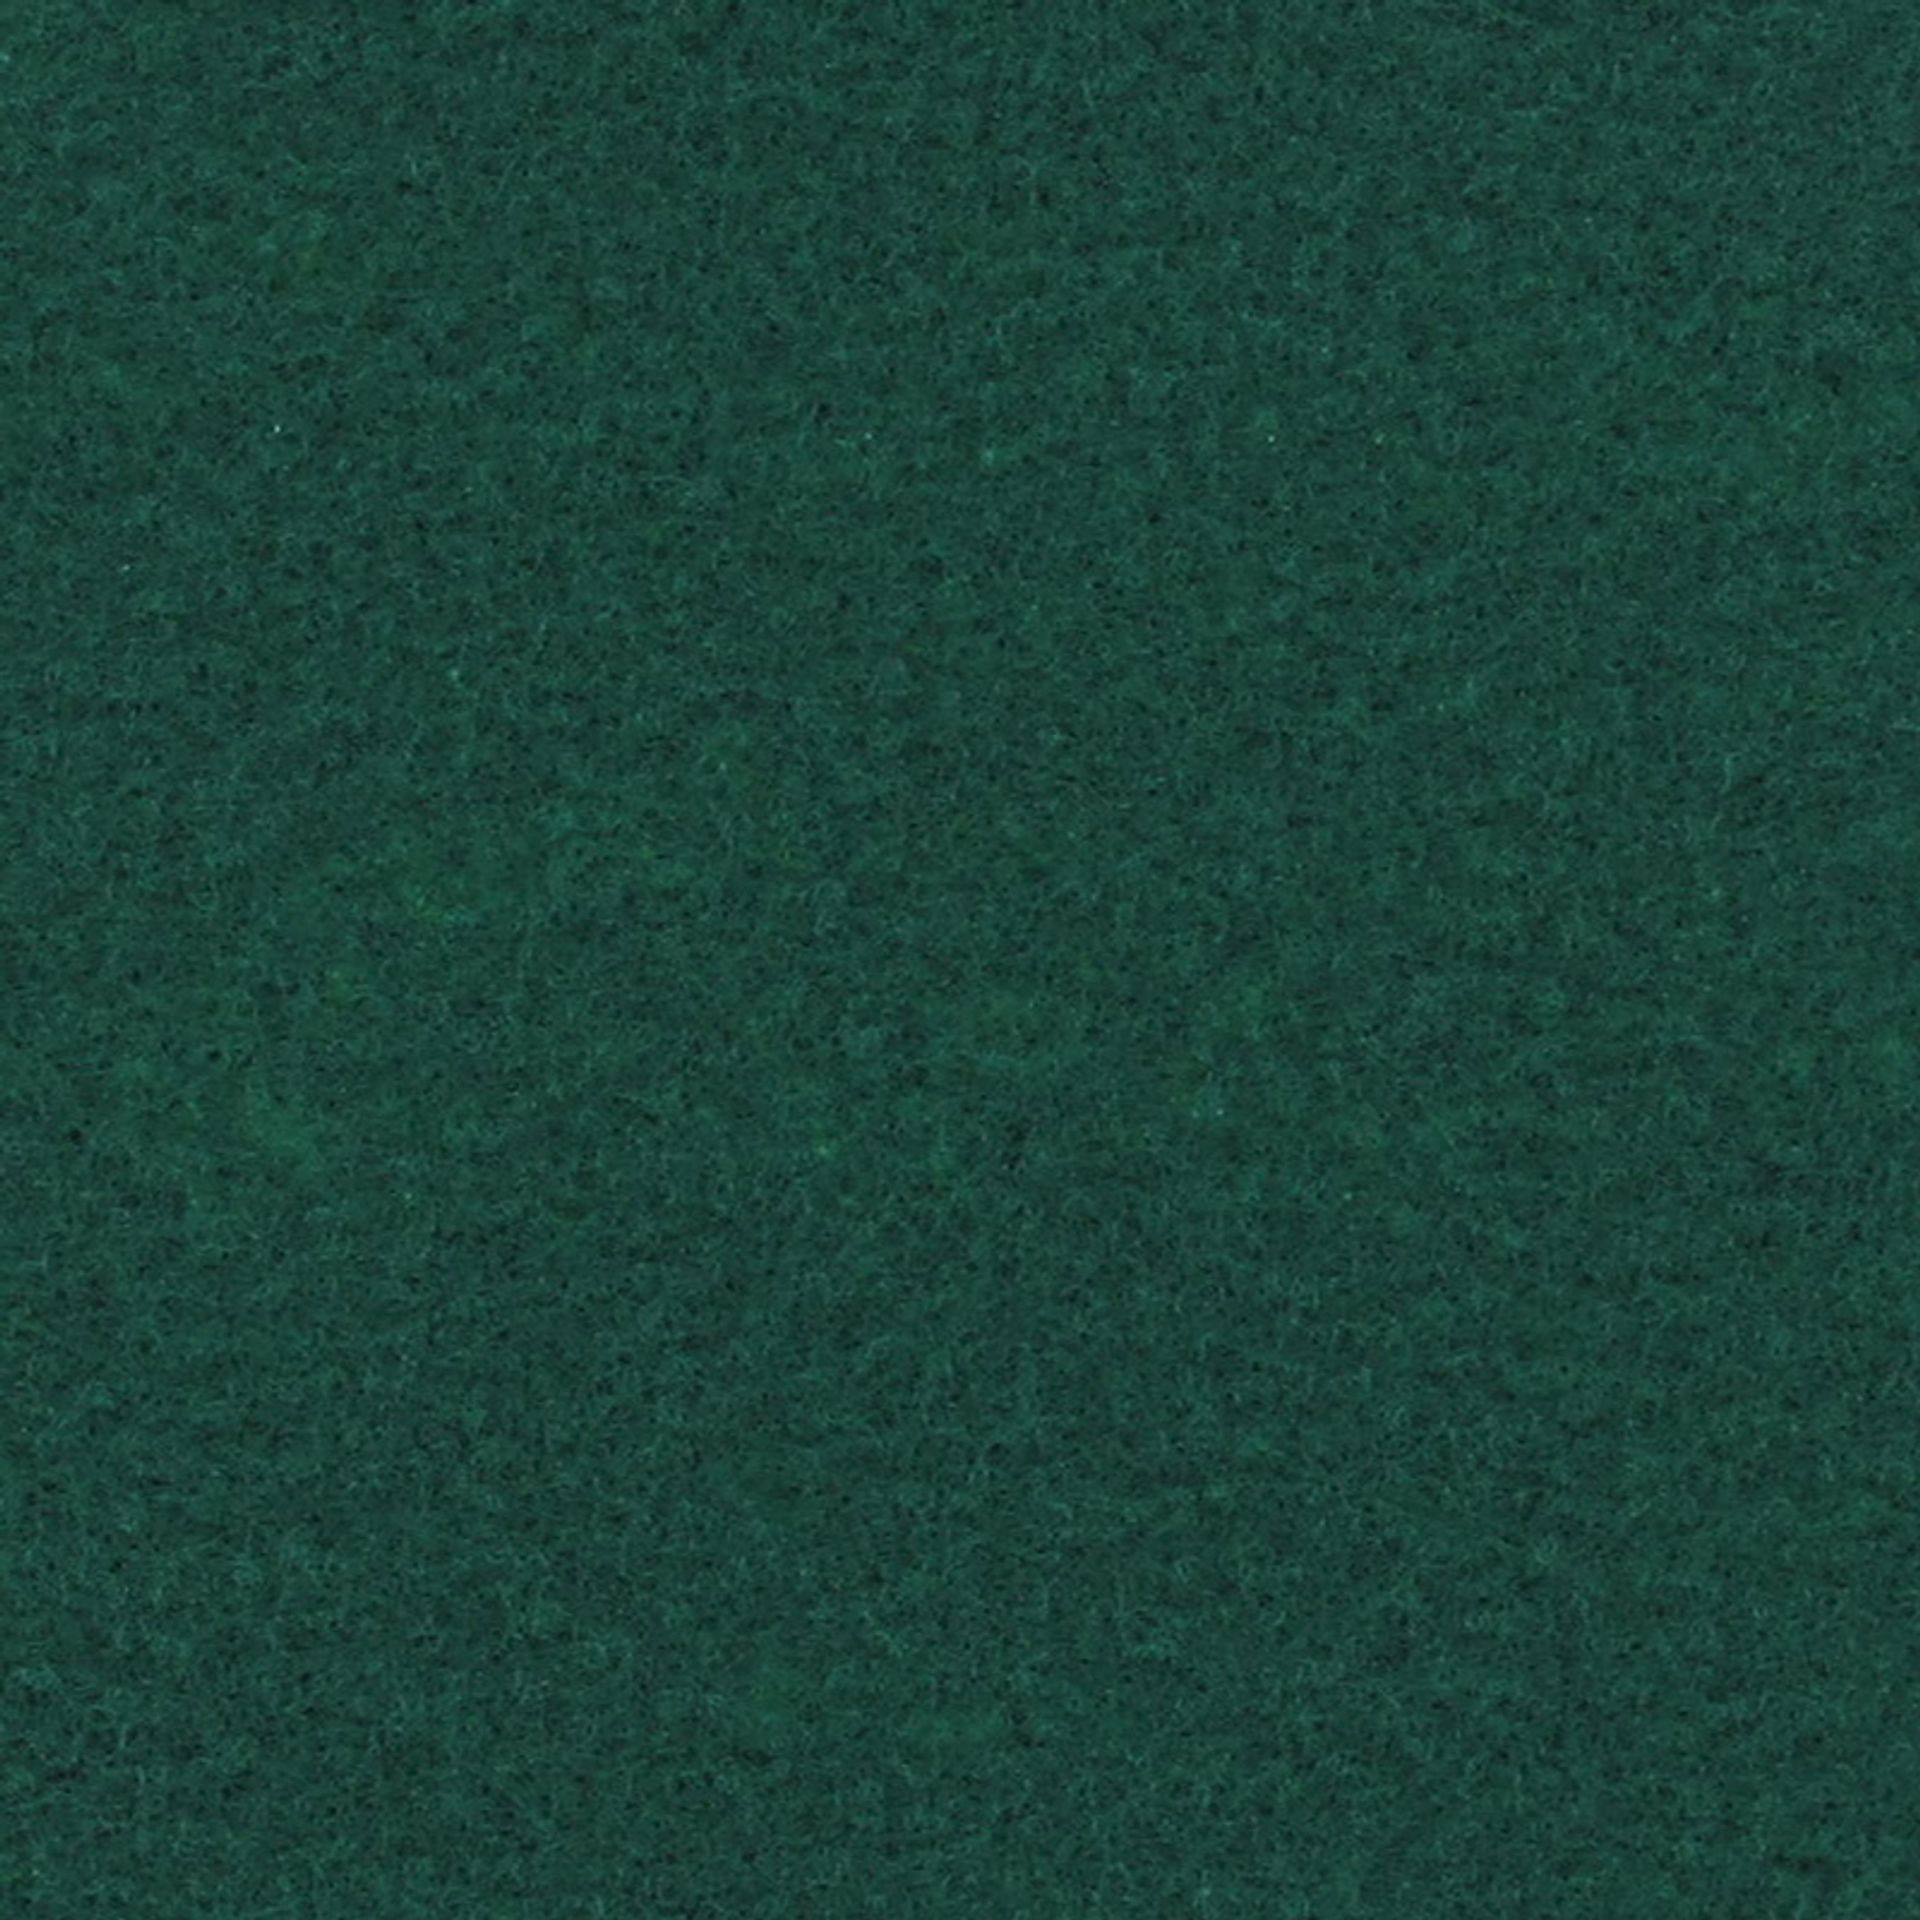 Messeboden Velours EXPOLUXE Pine Green 0831 ohne Schutzfolie - Rollenbreite 200 cm